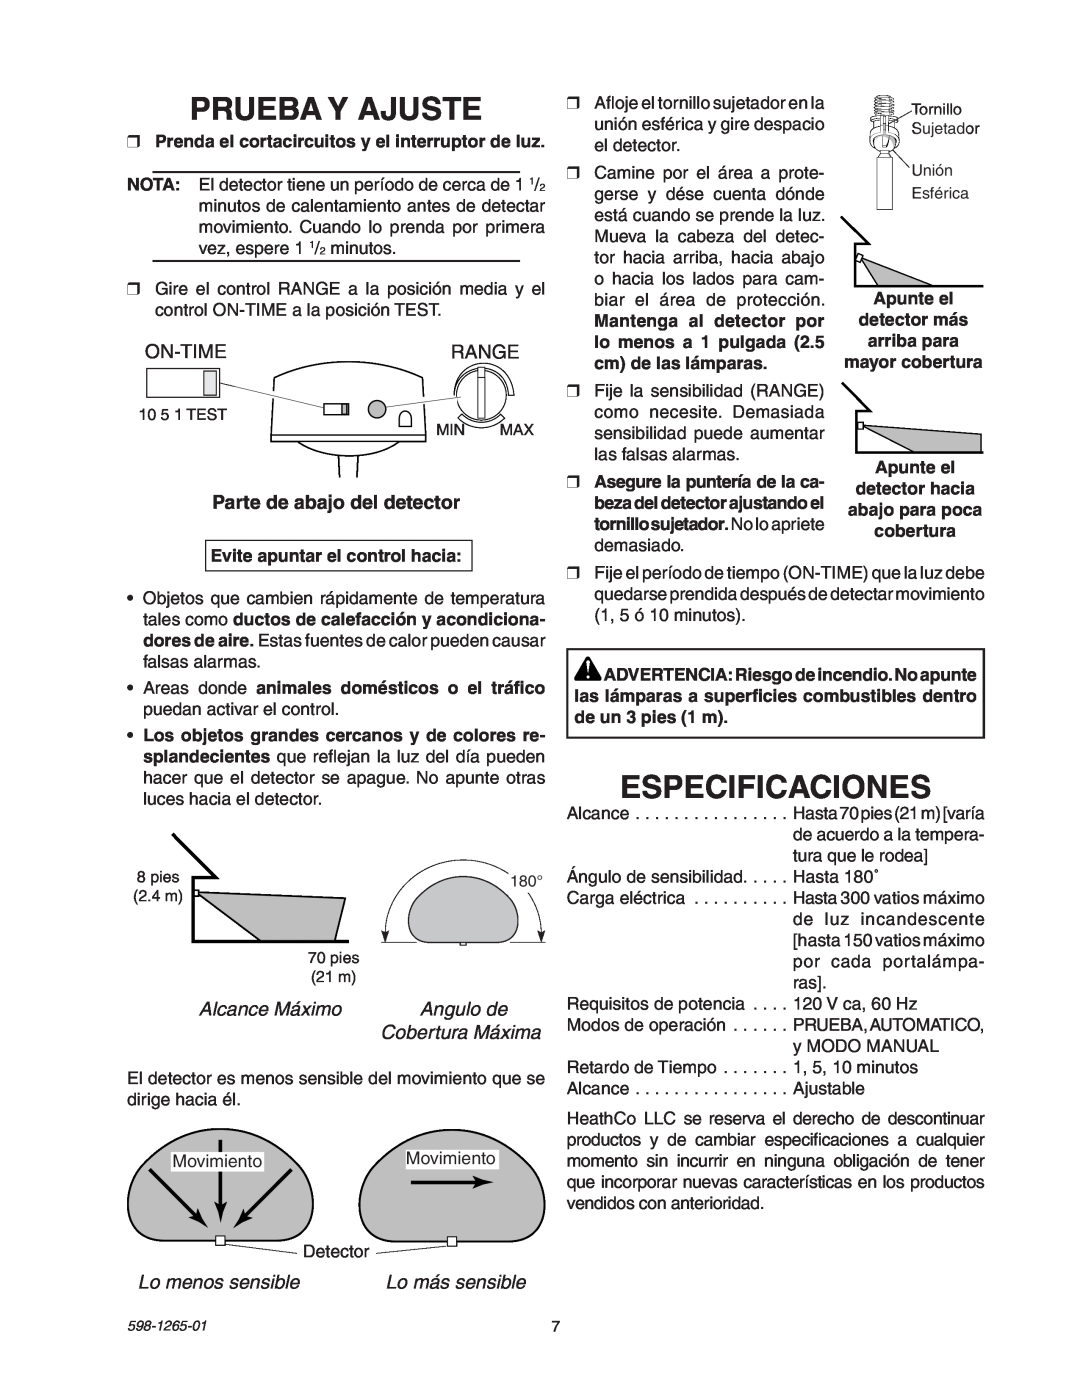 Heath Zenith SL-5412 manual Prueba Y Ajuste, Especificaciones, On-Timerange, Parte de abajo del detector, Alcance Máximo 